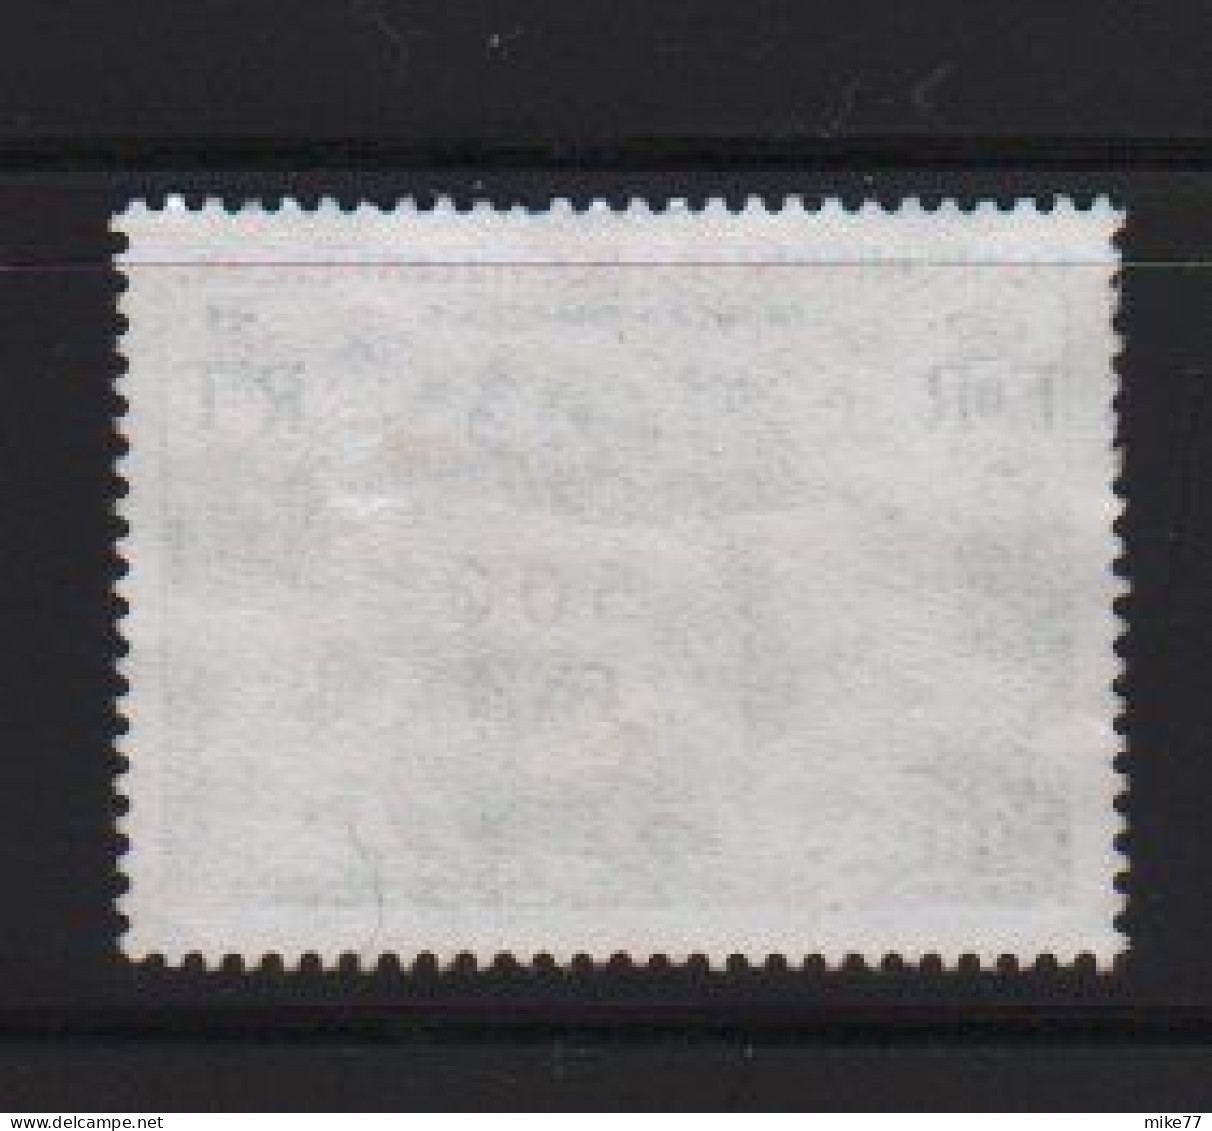 Timbre Nouvelles Hébrides Taureau Charolais 1978 10 F Surchargé 500 FNH - Used Stamps